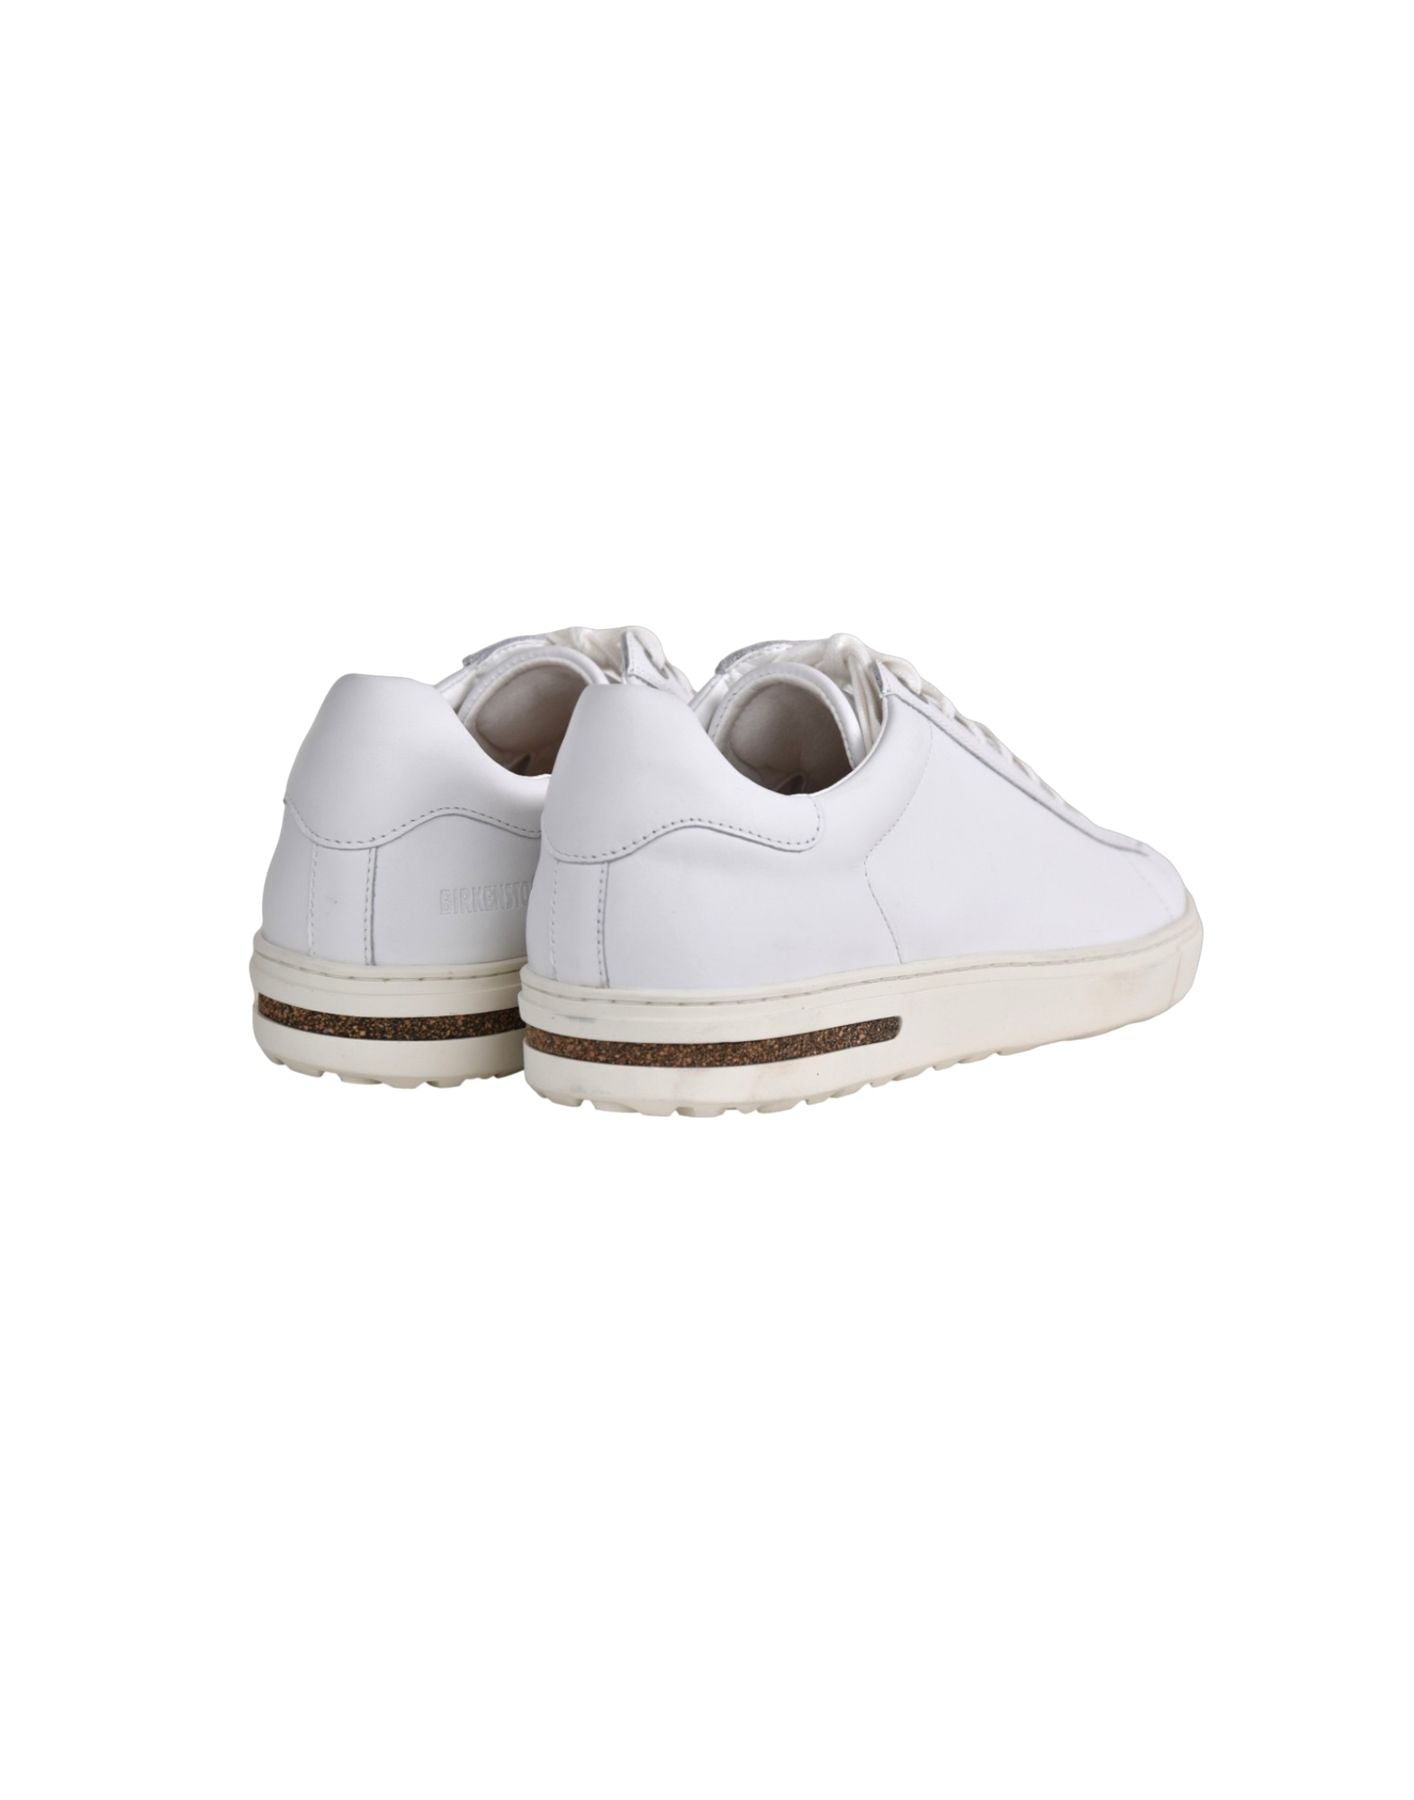 Chaussures Man 1017723 Birkenstock blanc